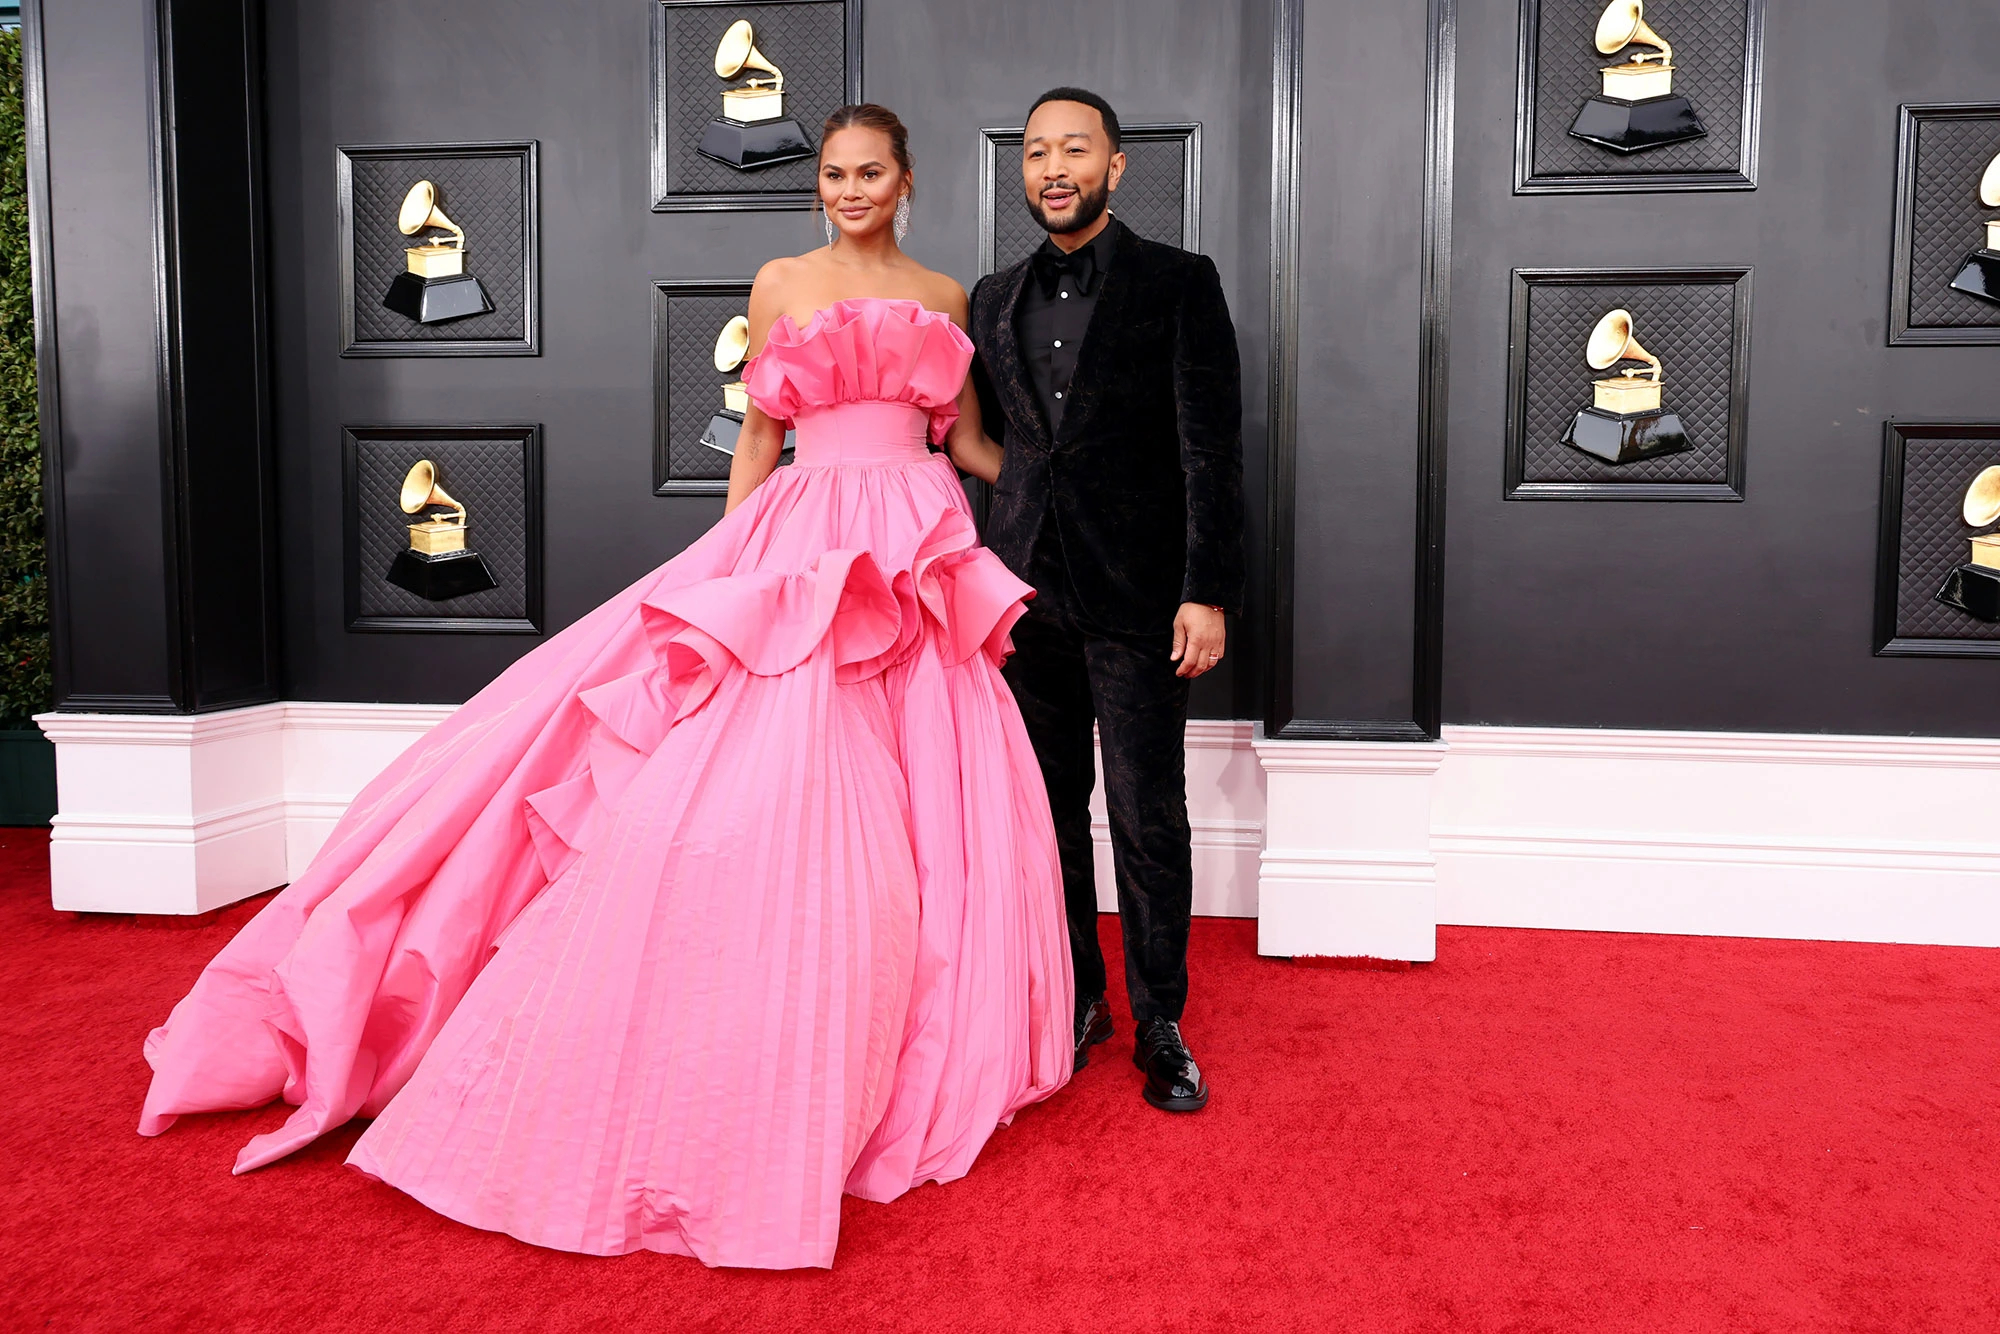 Một cặp đôi khác cũng chiếm spotlight trên thảm đỏ Grammy 2022 là vợ chồng Chrissy Teigen và John Legend. Chủ nhân hit 'All of me' lịch lãm trong suit đen còn bà xã Chrissy đã 'quét sạch' thảm đỏ bằng mẫu váy hồng nổi bật, thiết kế bồng bềnh nữ tính.